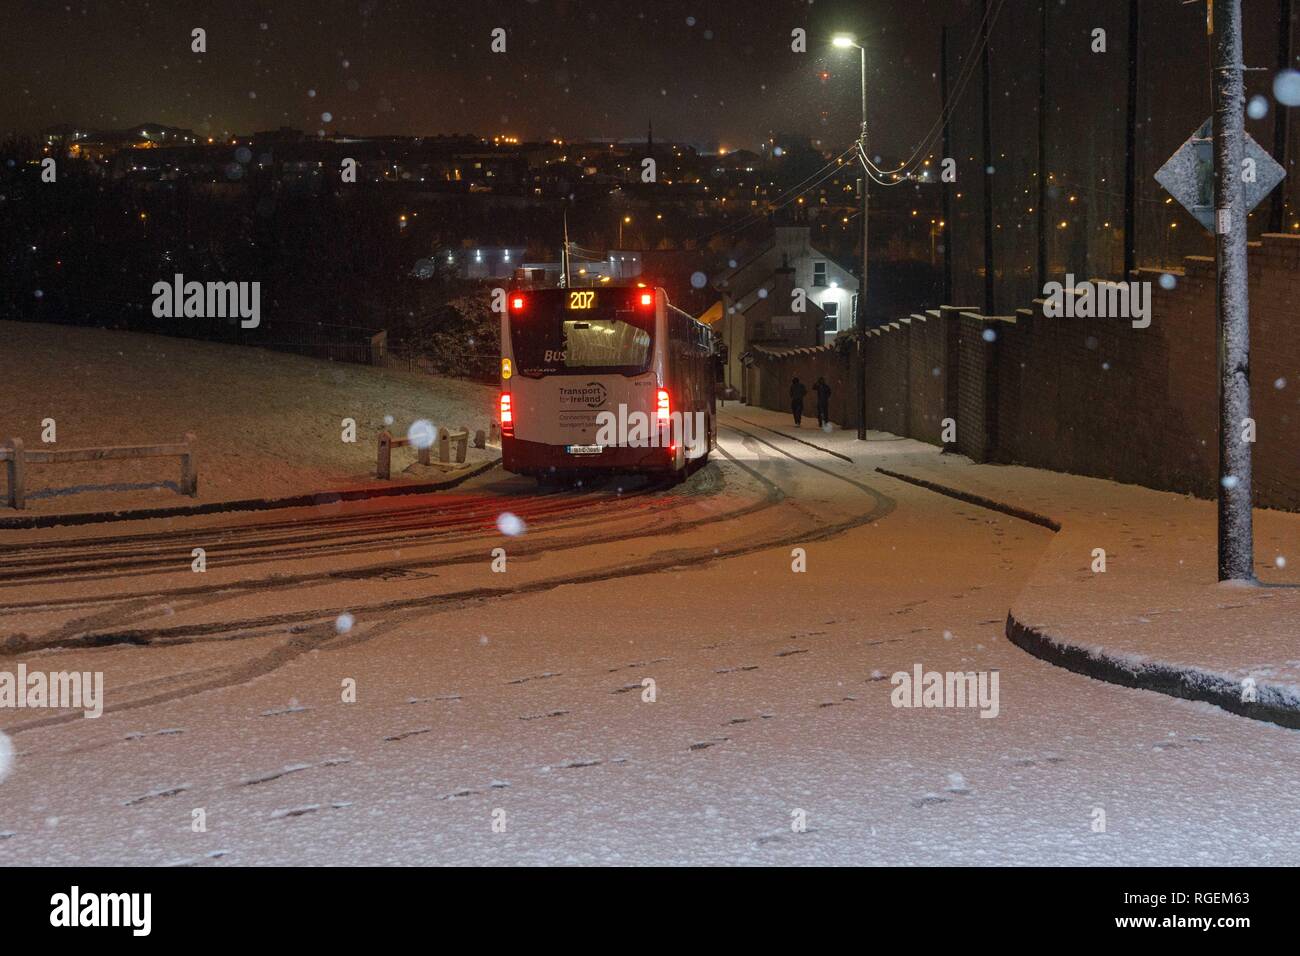 Cork, Irlande, le 29 janvier, 2019. La neige en Ballyvolane, la ville de Cork. Aujourd'hui une alerte météo jaune a été mis en place à travers le pays par Met Eireann pour la glace et la neige. Les fortes chutes de neige a frappé une partie de la ville de Cork et le comté tout au long de la journée faire de certaines routes et conduite perfide particulièrement dangereuses tout au long de la ville. L'on voit ici est le bus 207 de faire son chemin vers le bas Ballincollie Road. Credit : Damian Coleman/ Alamy Live News. Banque D'Images